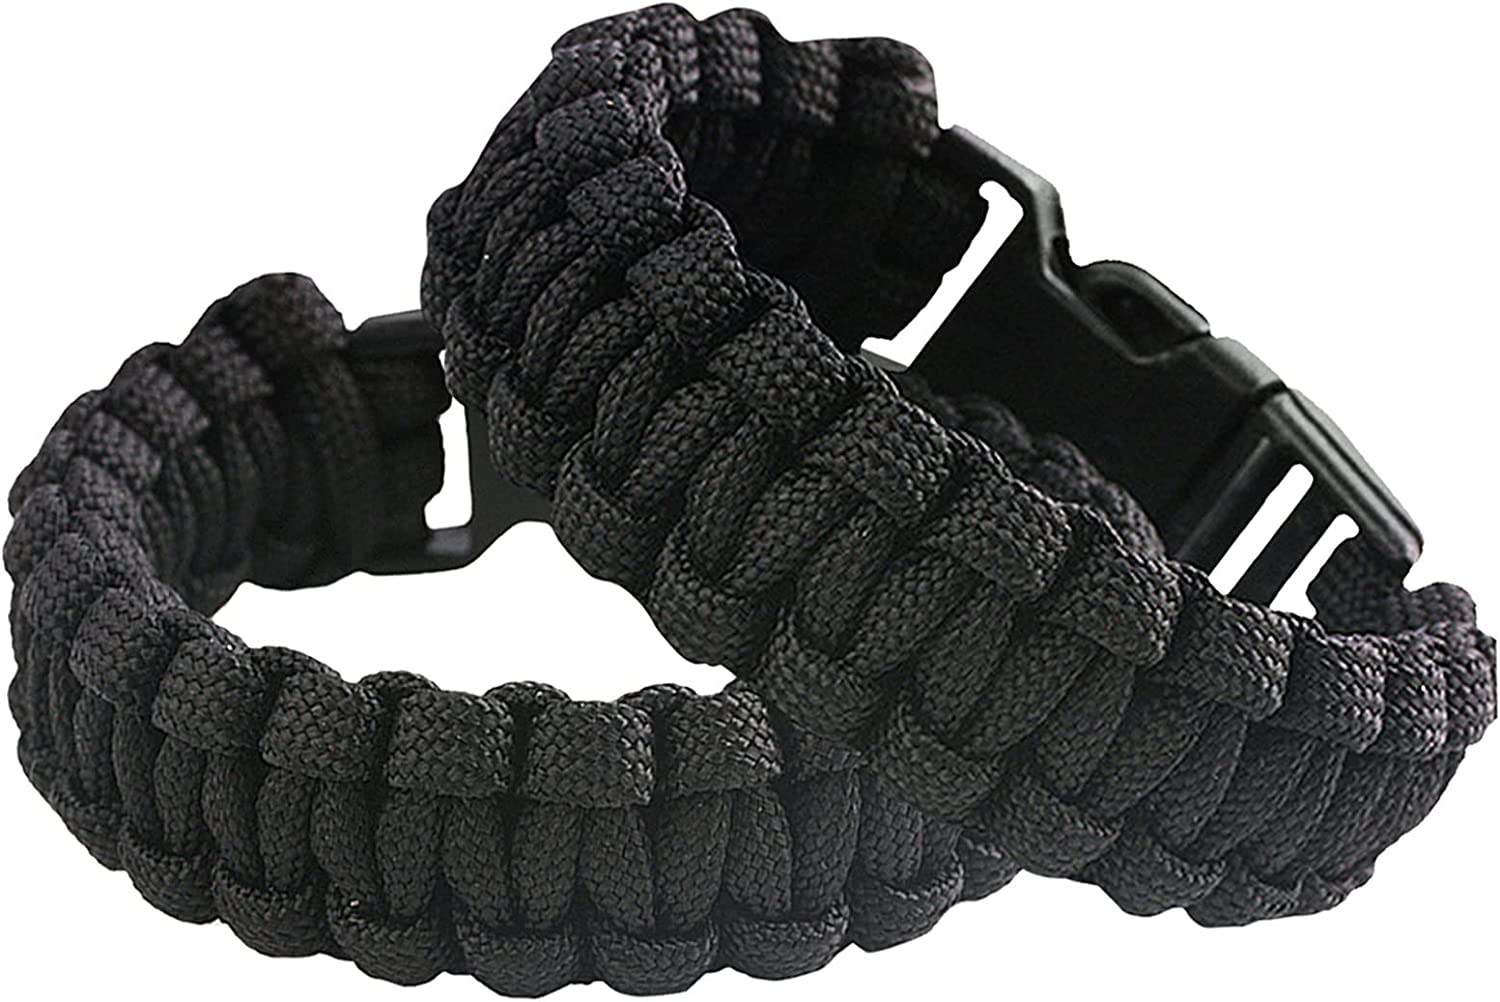 Paracord Bracelet WholeSale - Price List, Bulk Buy at